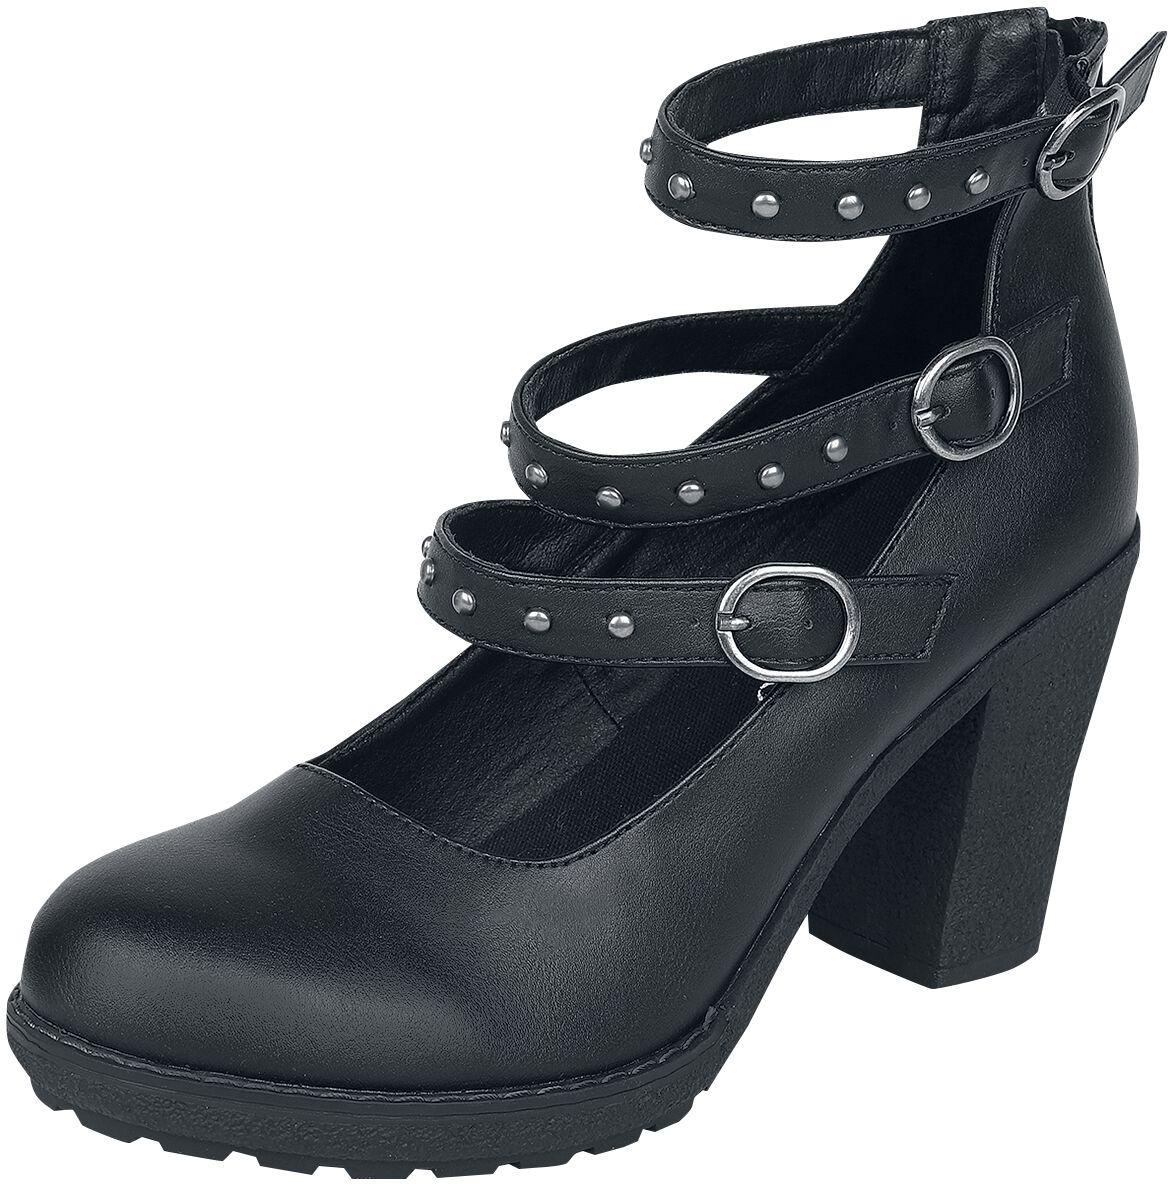 Gothicana by EMP - Gothic High Heel - High Heels mit Riemen und Nieten - EU37 bis EU41 - für Damen - Größe EU40 - schwarz